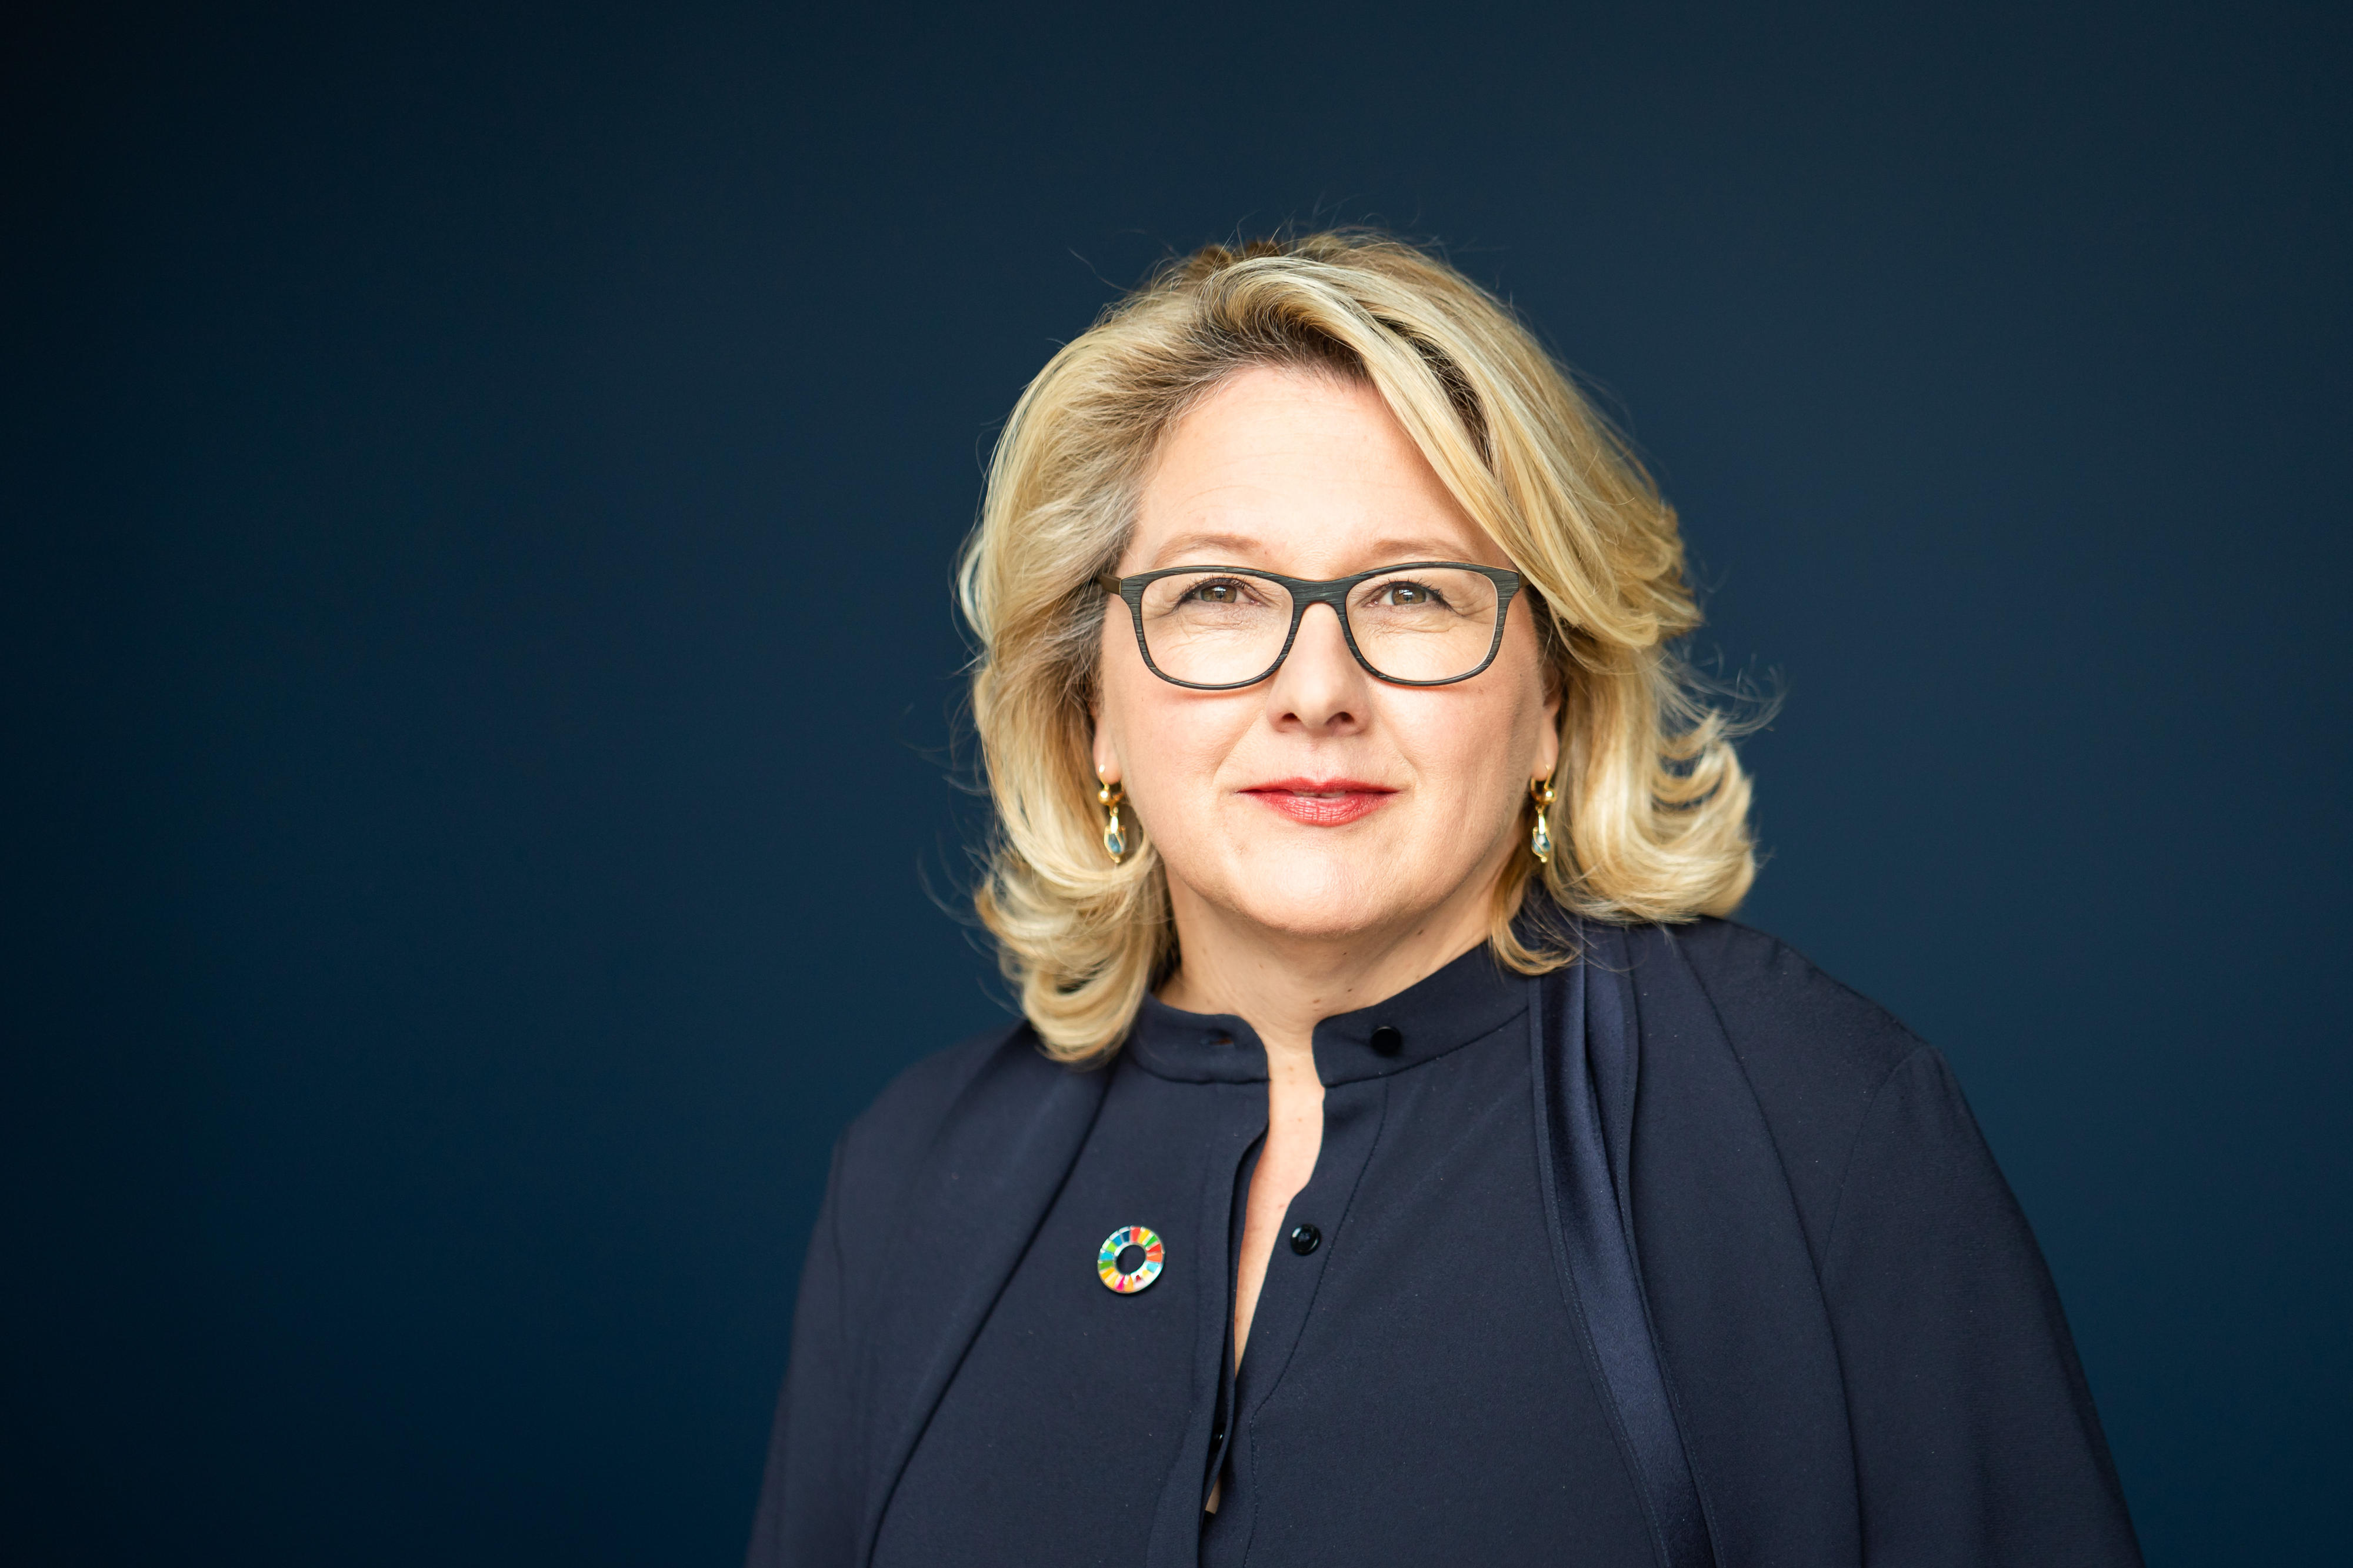 Svenja Schulze, Bundesministerin für wirtschaftliche Zusammenarbeit und Entwicklung